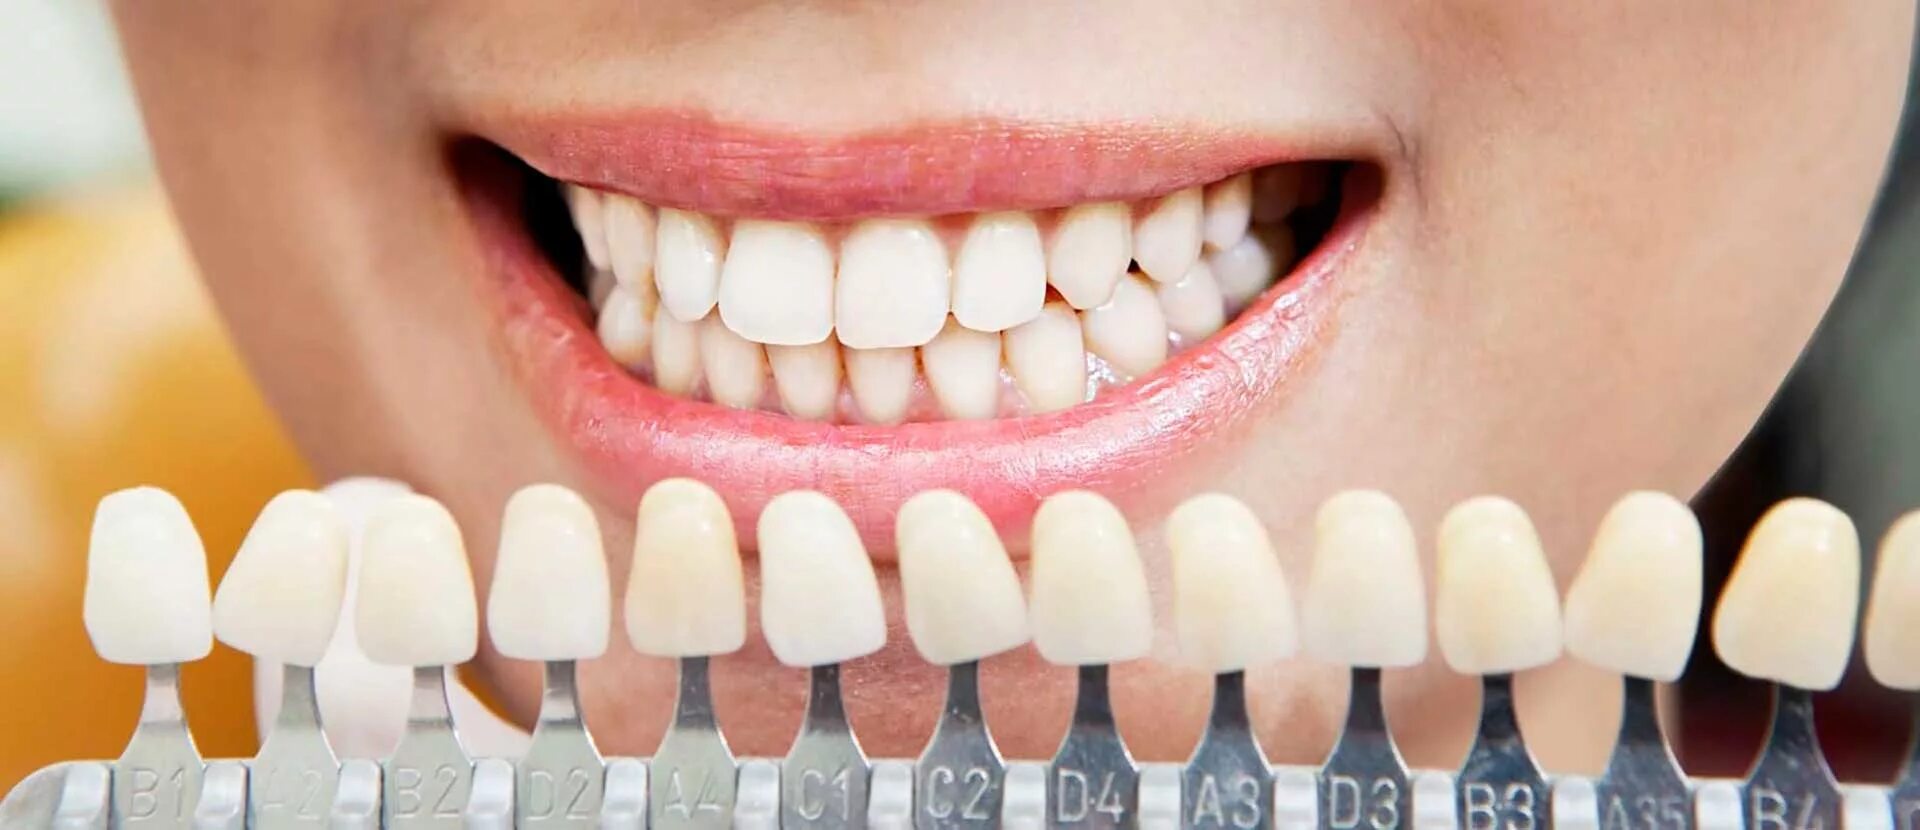 Зубы и т д. Металлокерамическая коронка цвет а2. Палитра Emax а 1 цвет зубов.